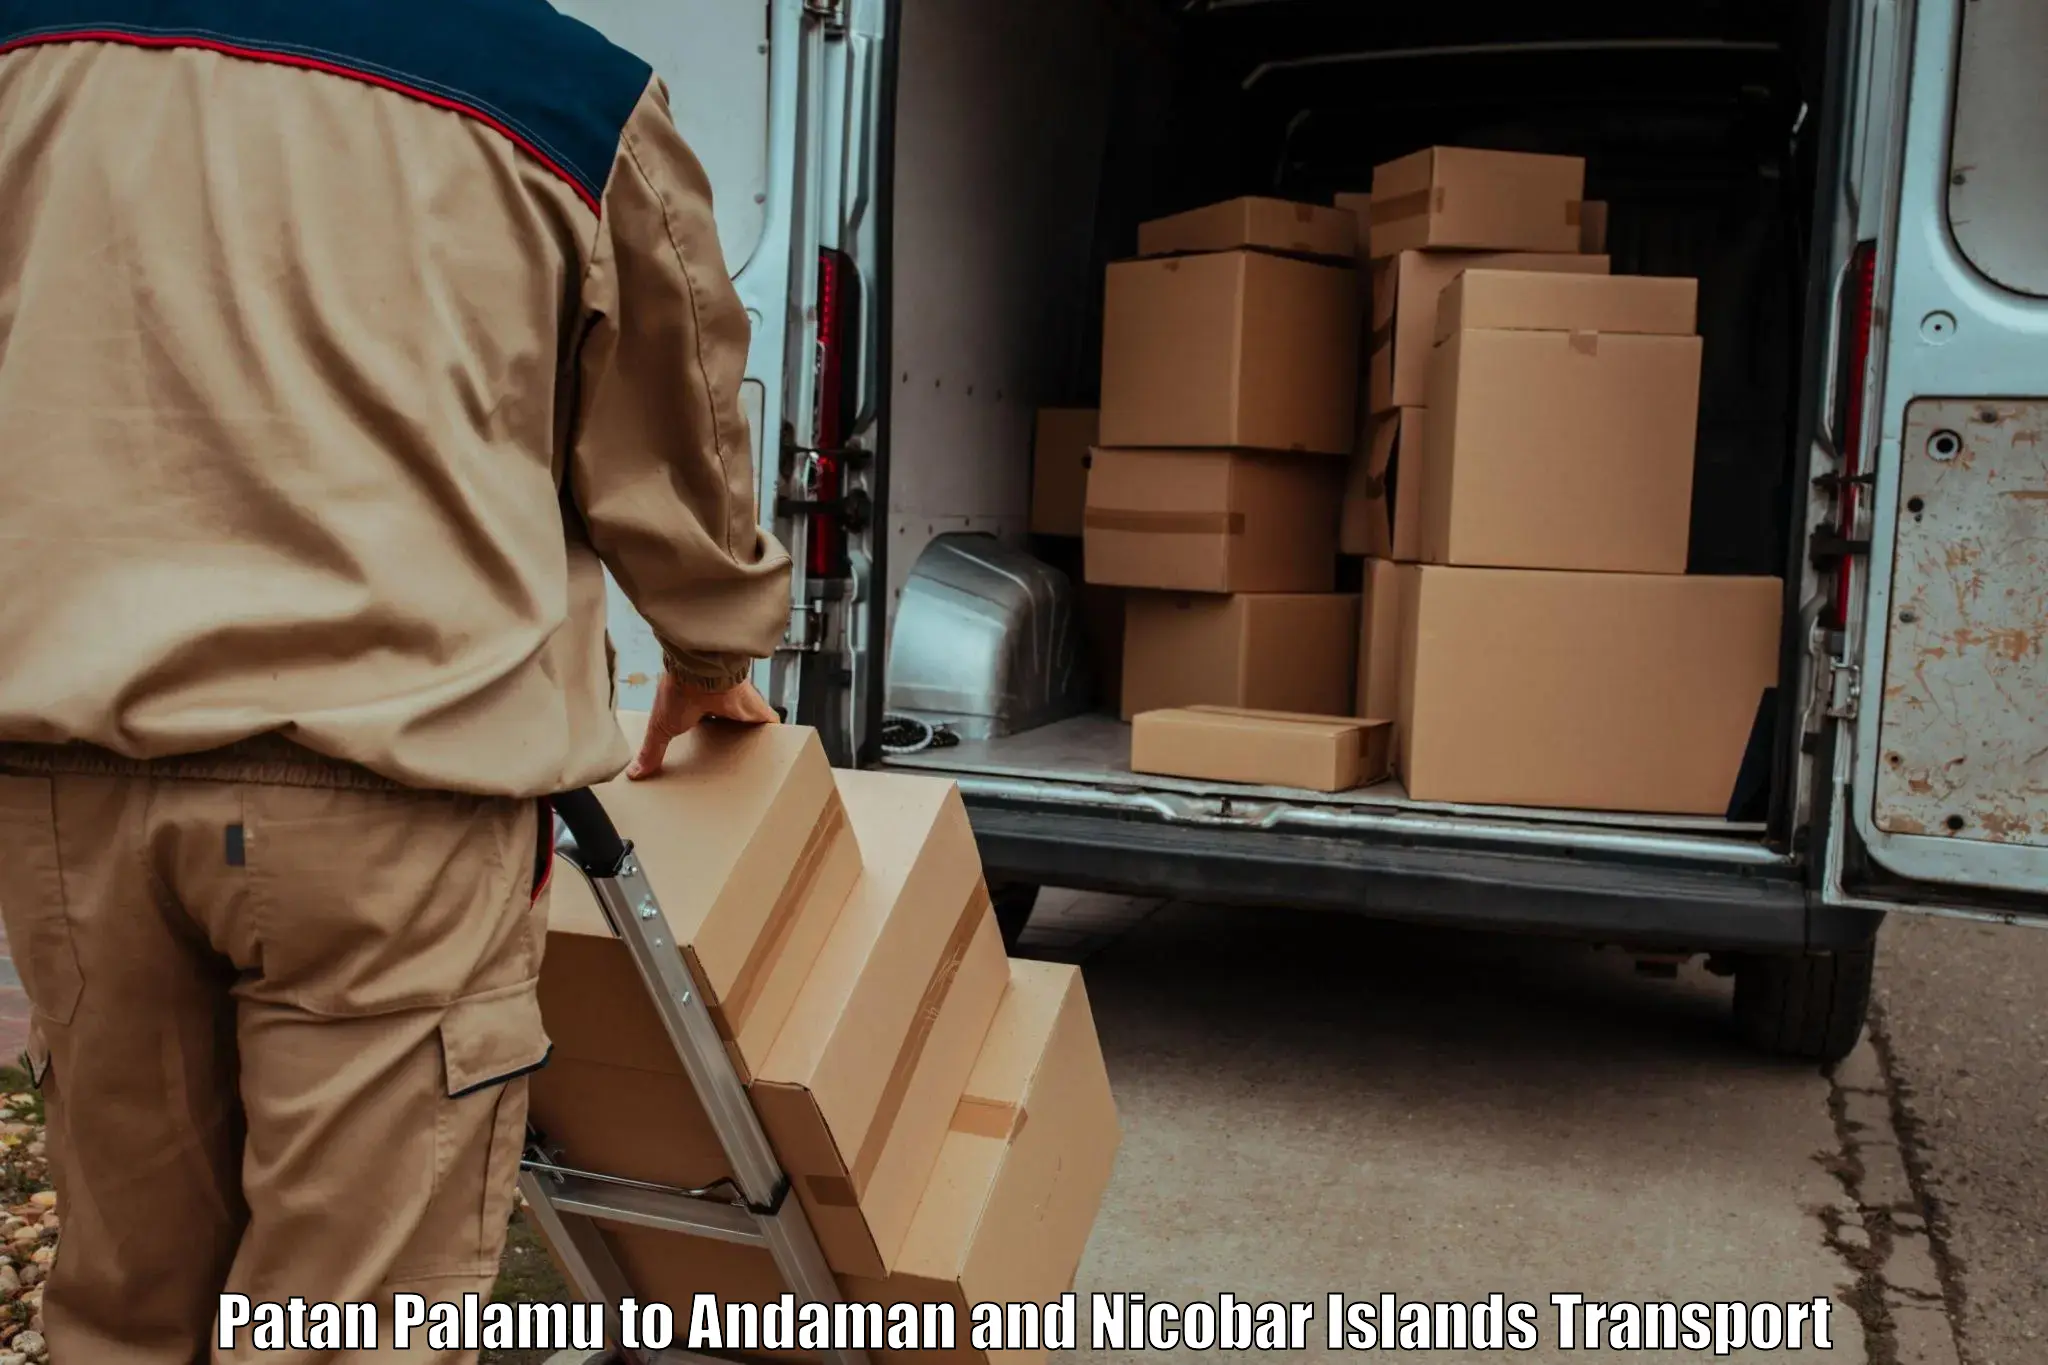 Shipping partner in Patan Palamu to Port Blair